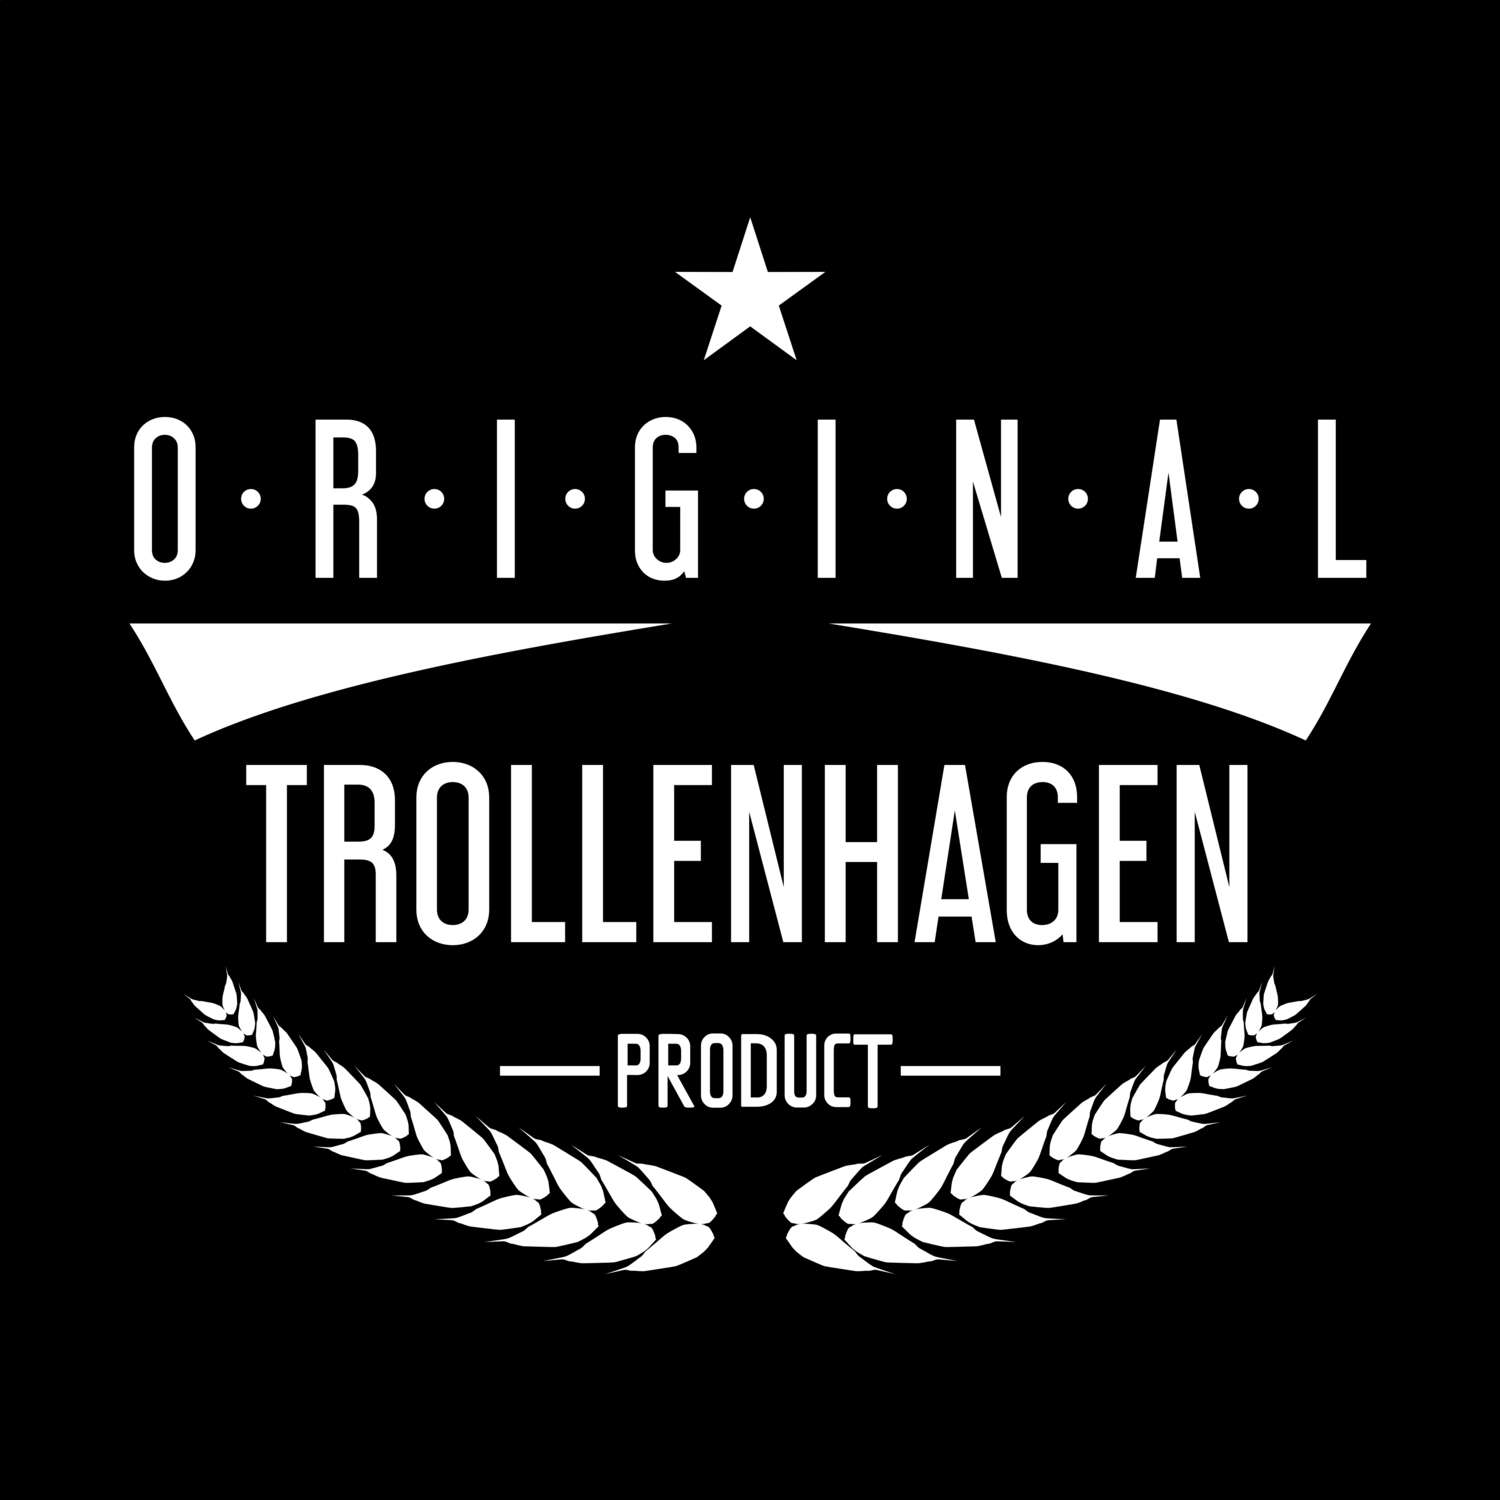 Trollenhagen T-Shirt »Original Product«